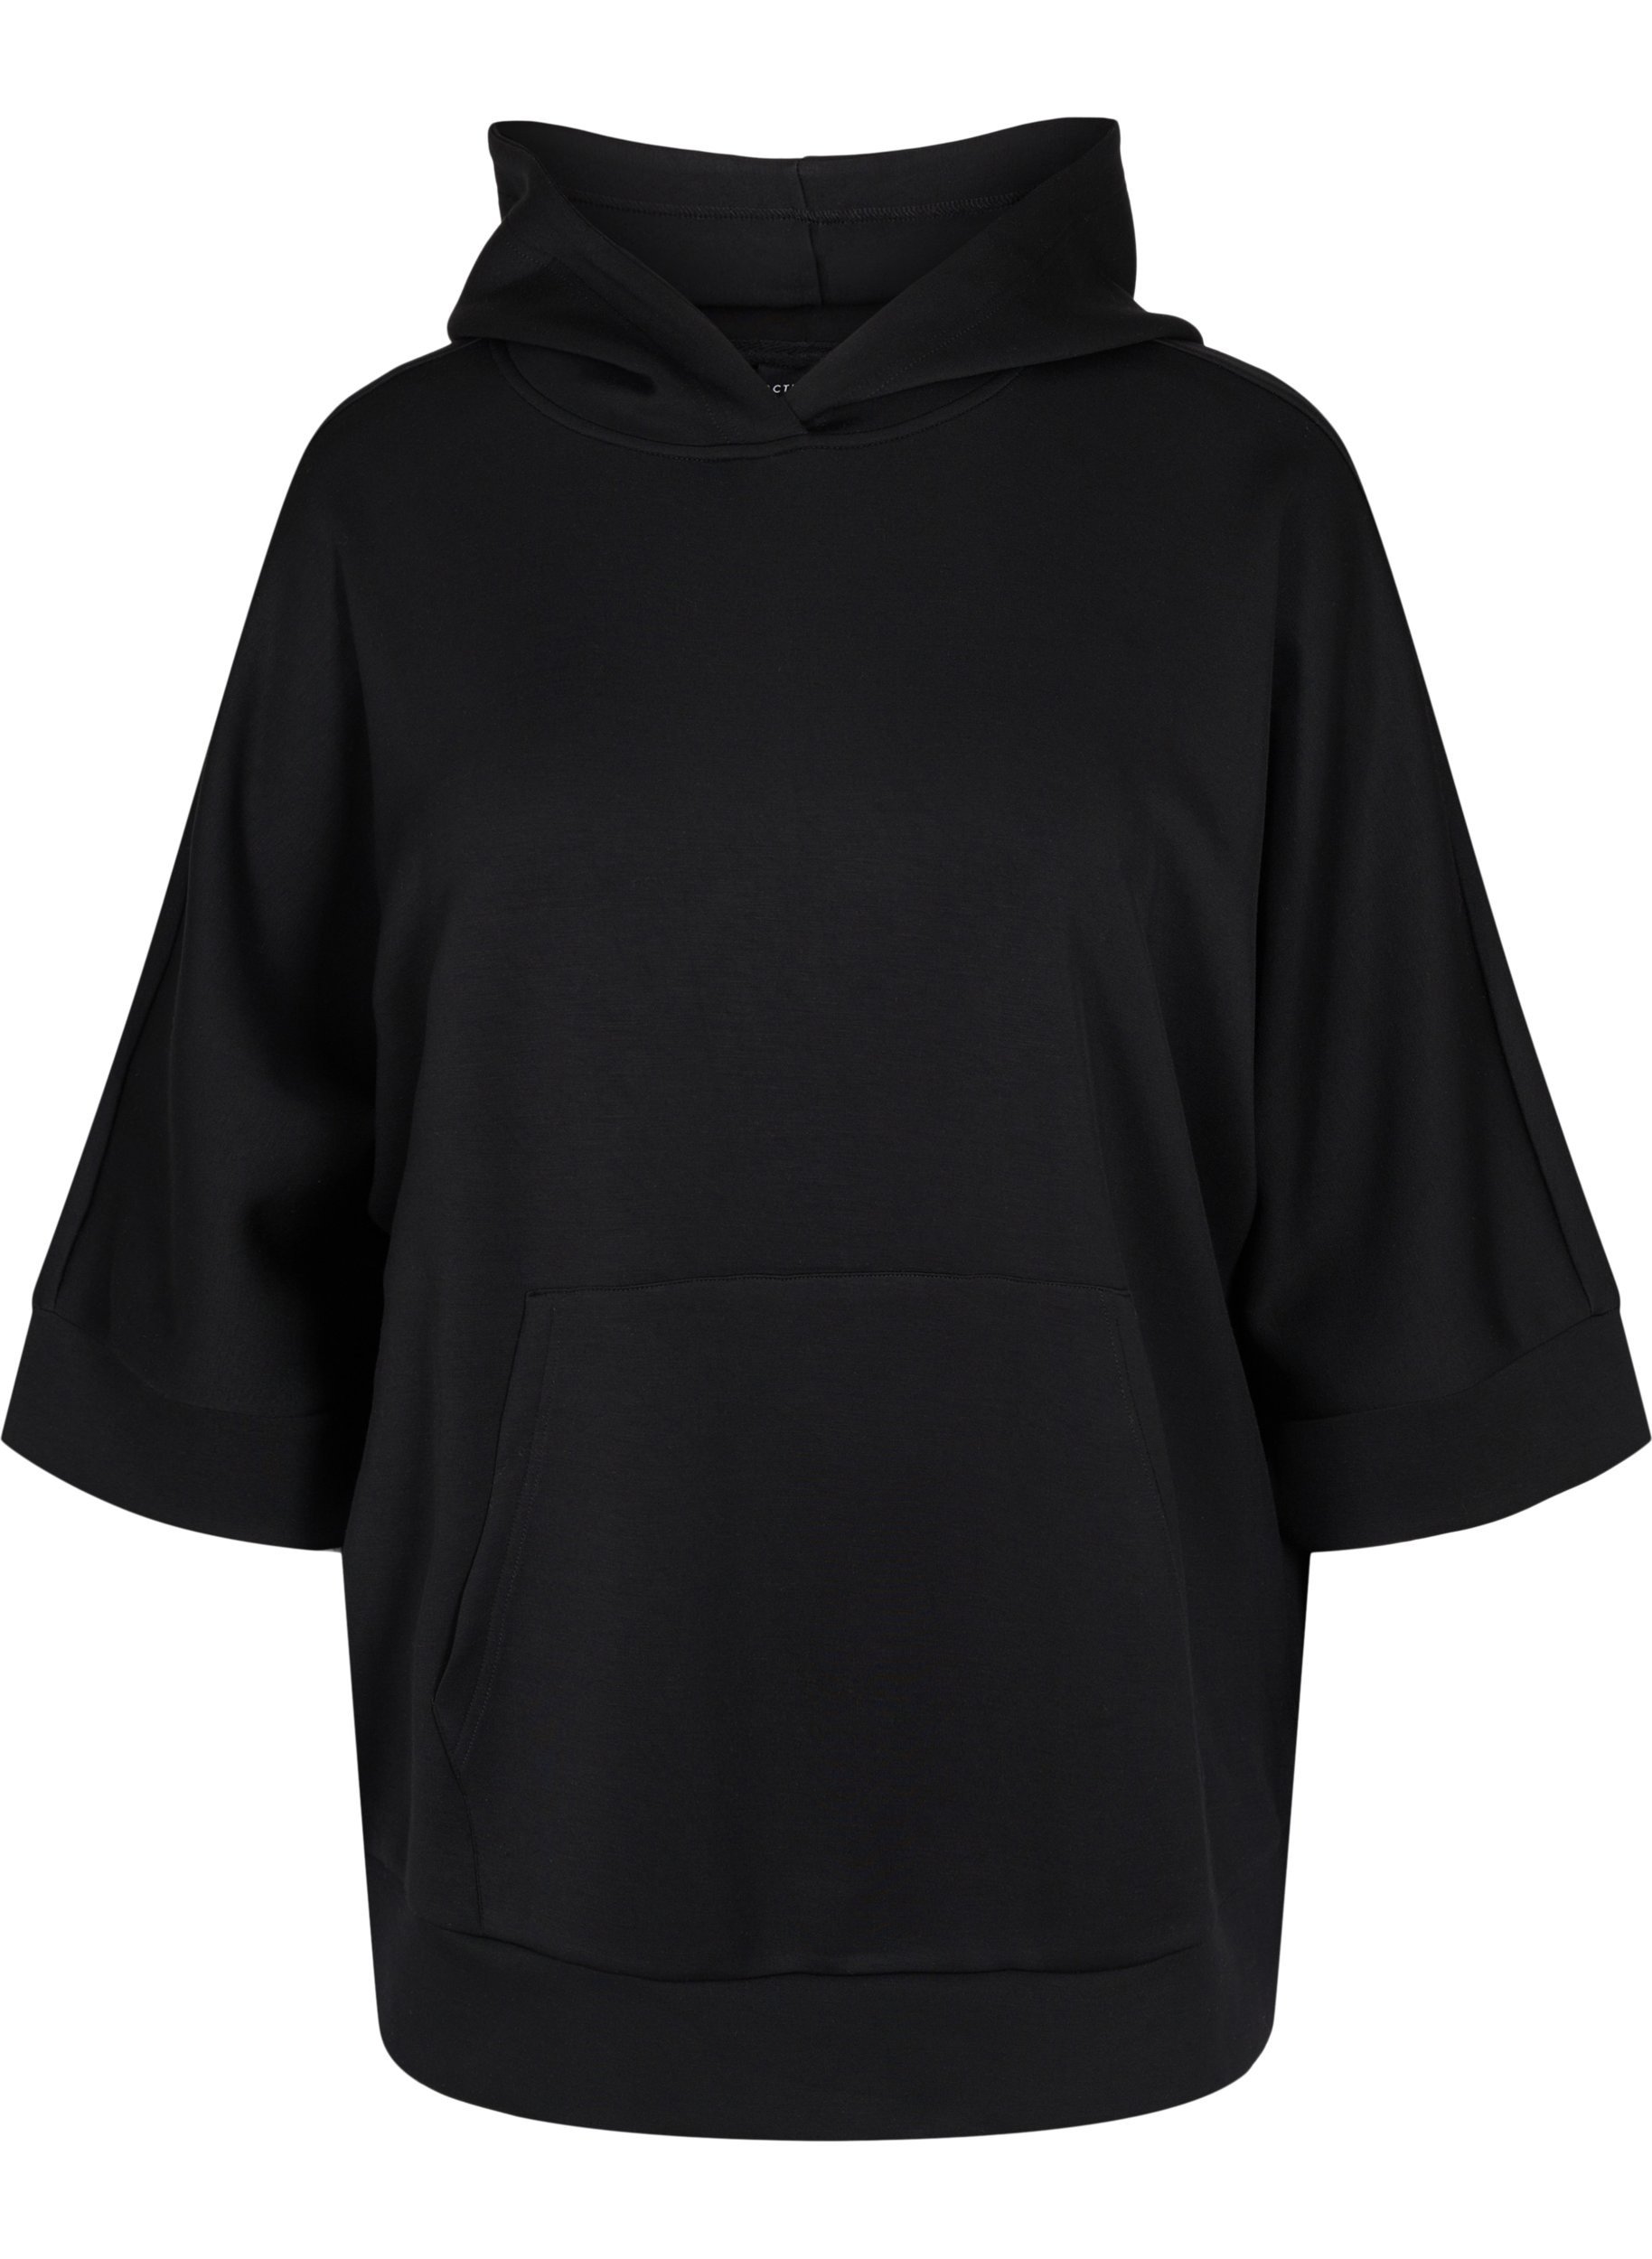 Sweatshirt med hætte og 3/4 ærmer, Black